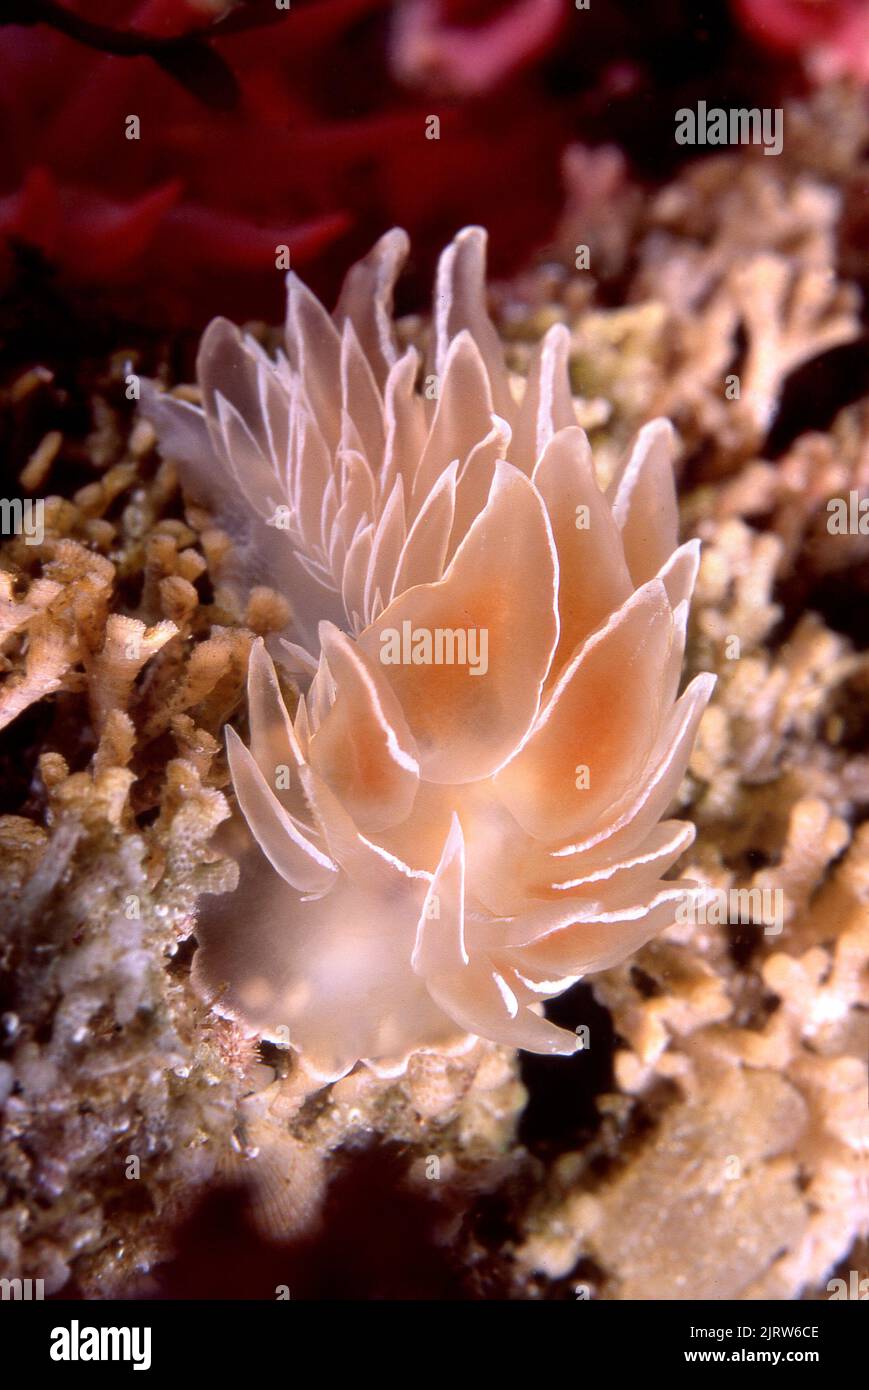 Un bel nudibranco di alabastro striscia su una zona di alghe bryozoan in cerca del suo prossimo pasto. Foto Stock